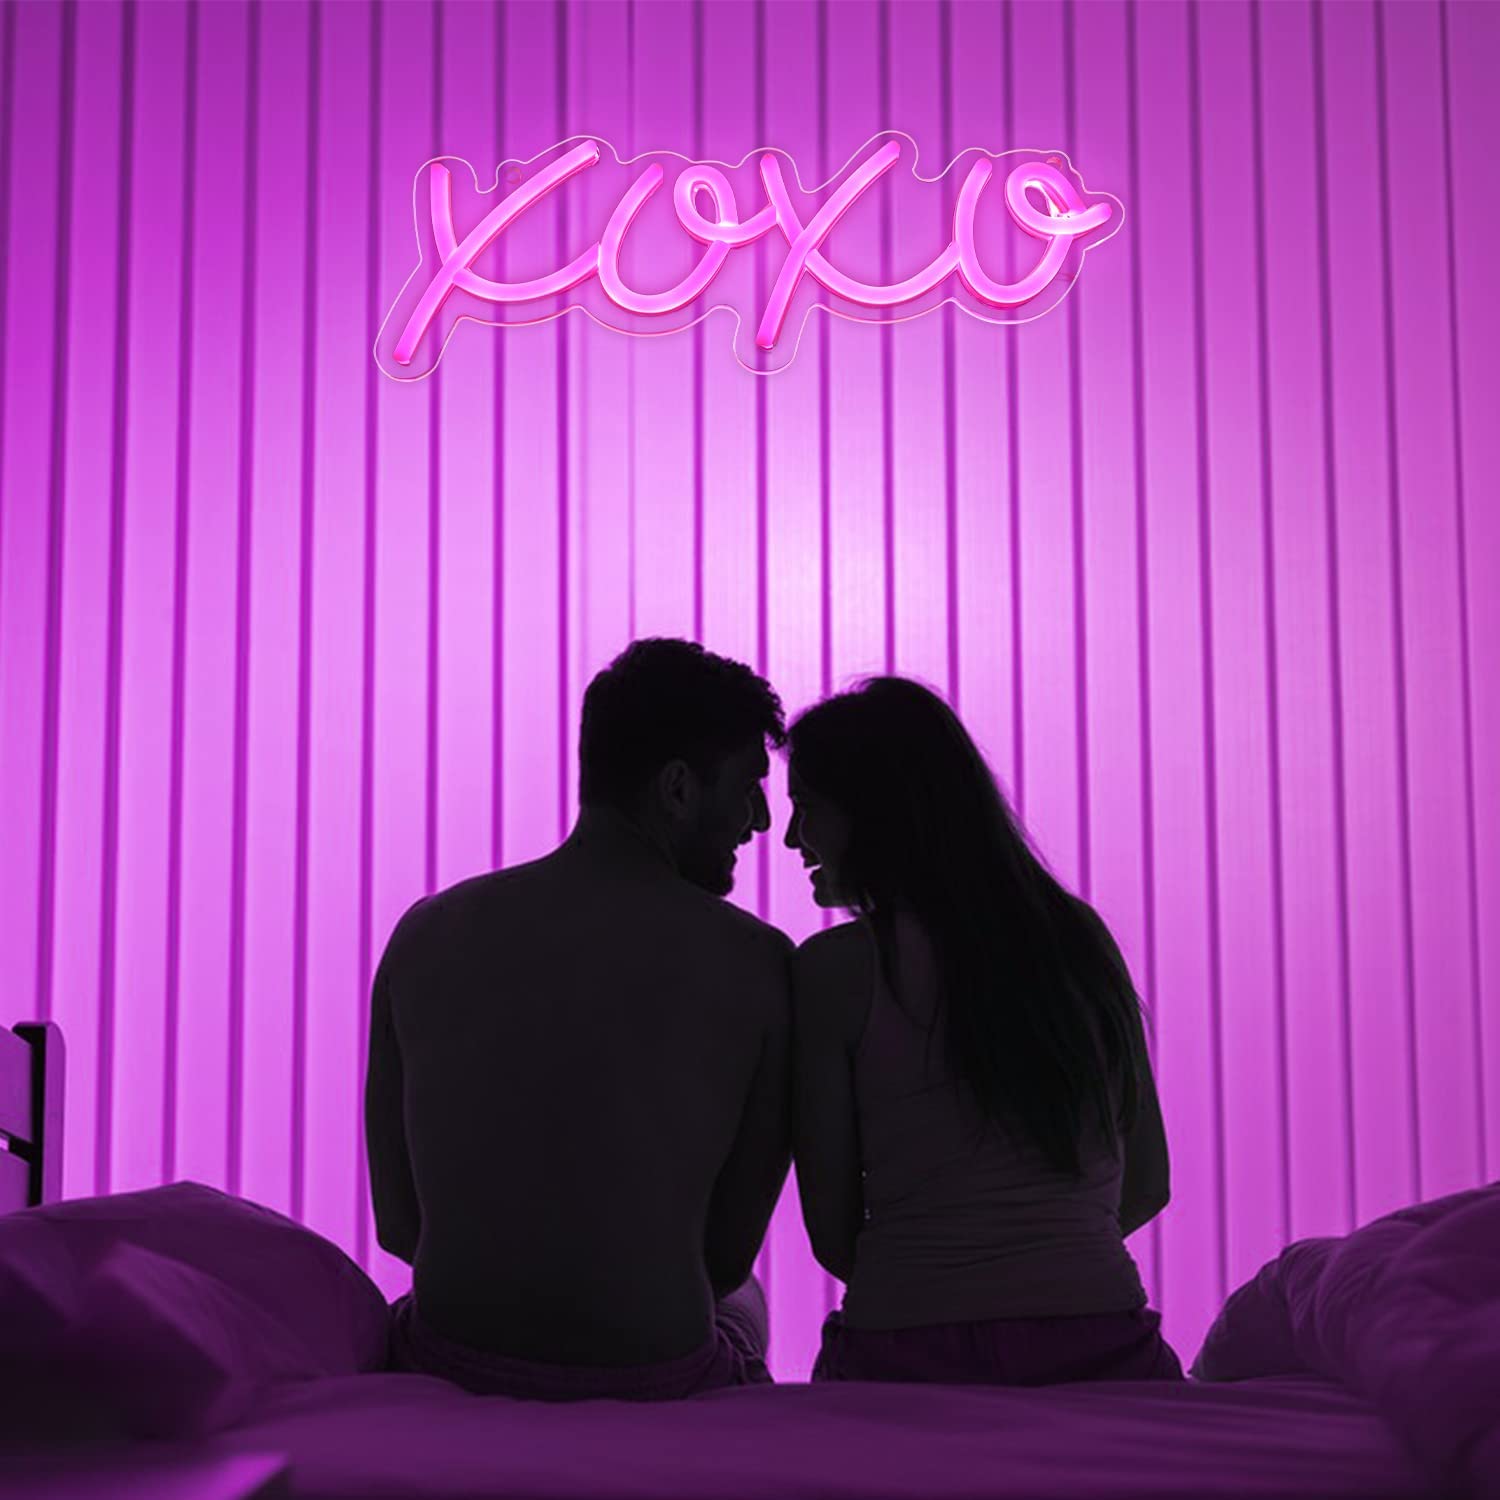 NEONIP-100% Handmade XOXO LED Neon Light Sign